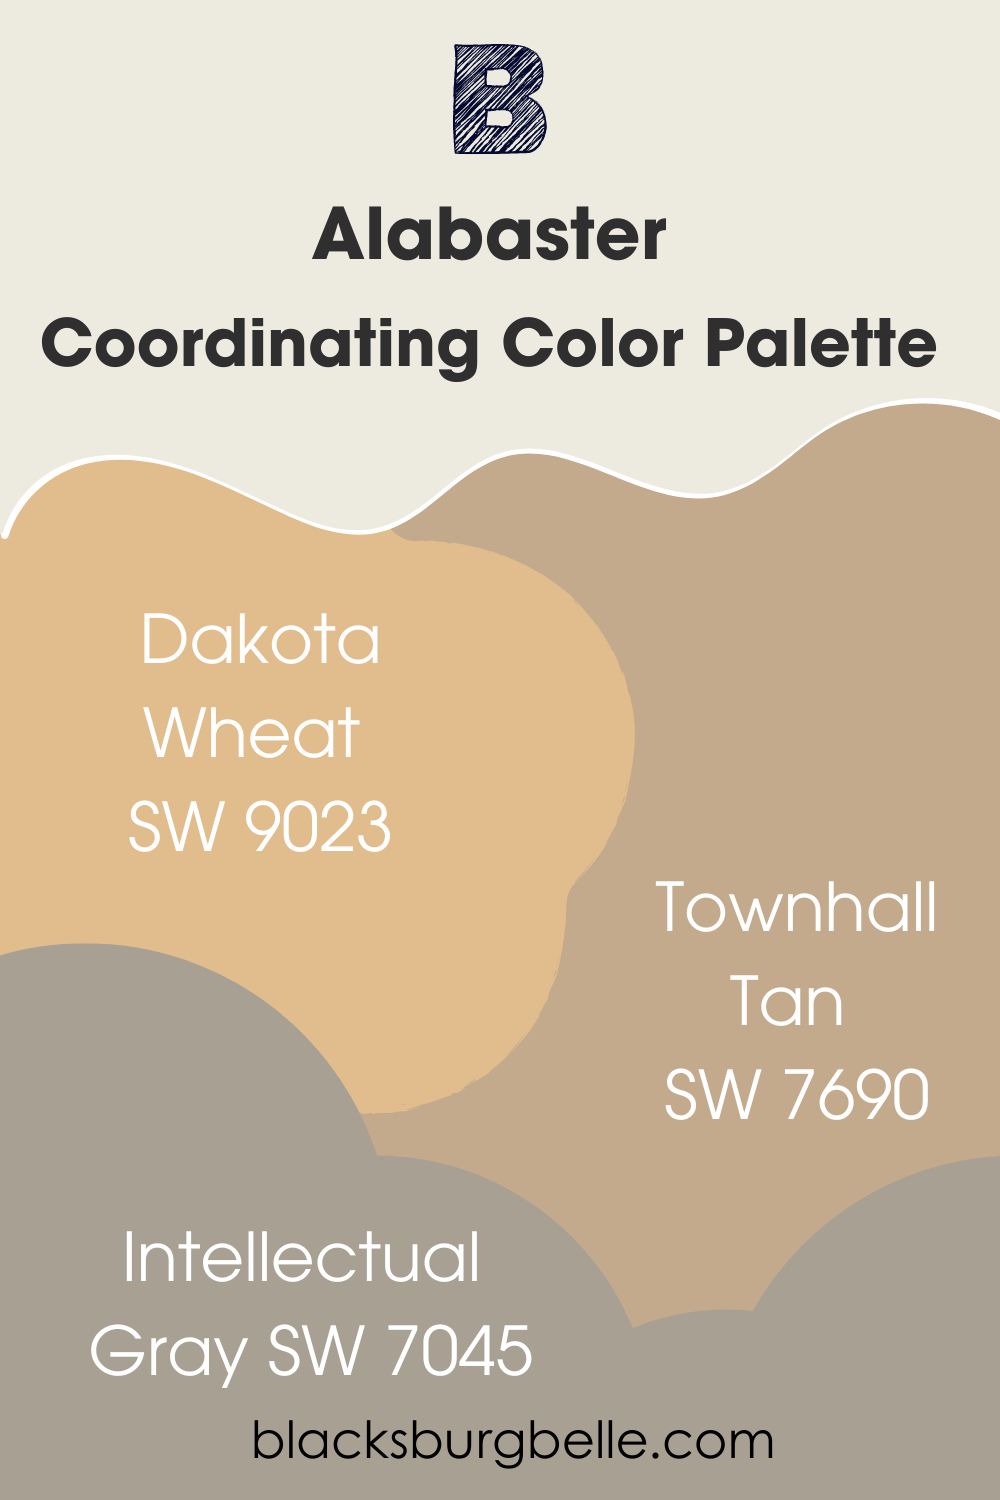 Alabaster Coordinating Color Palette